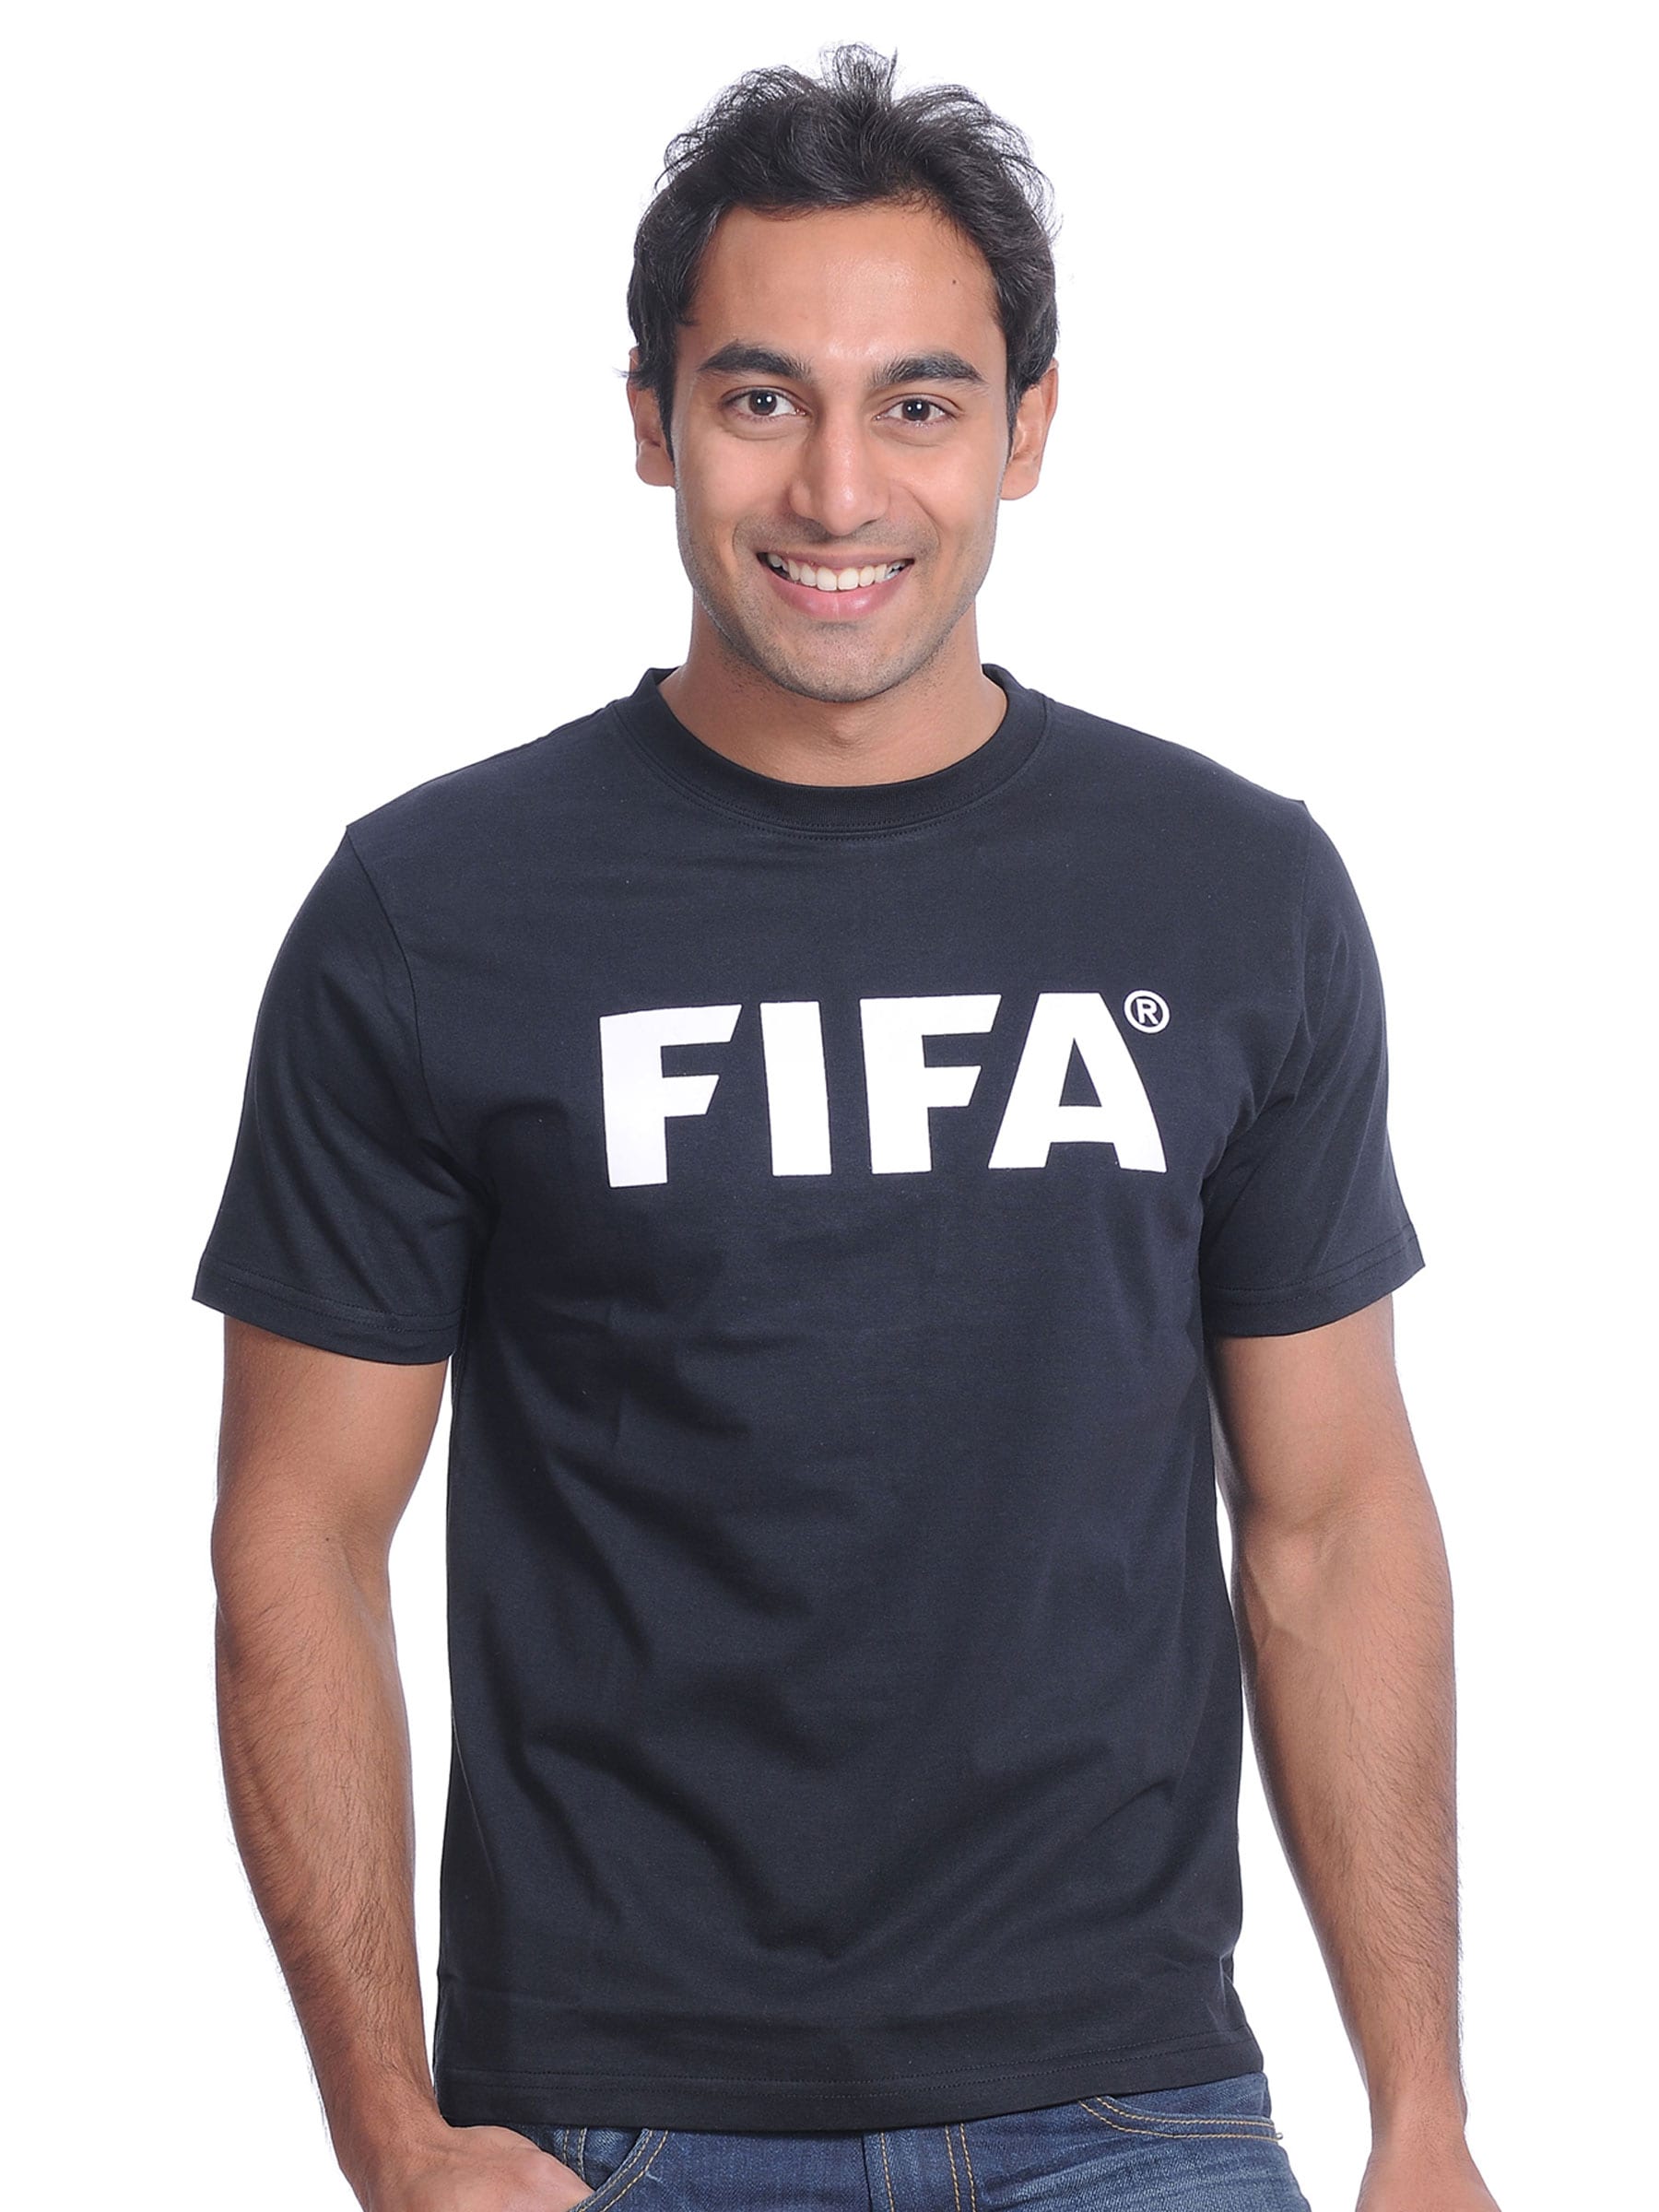 FIFA Mens Essentials Black T-shirt